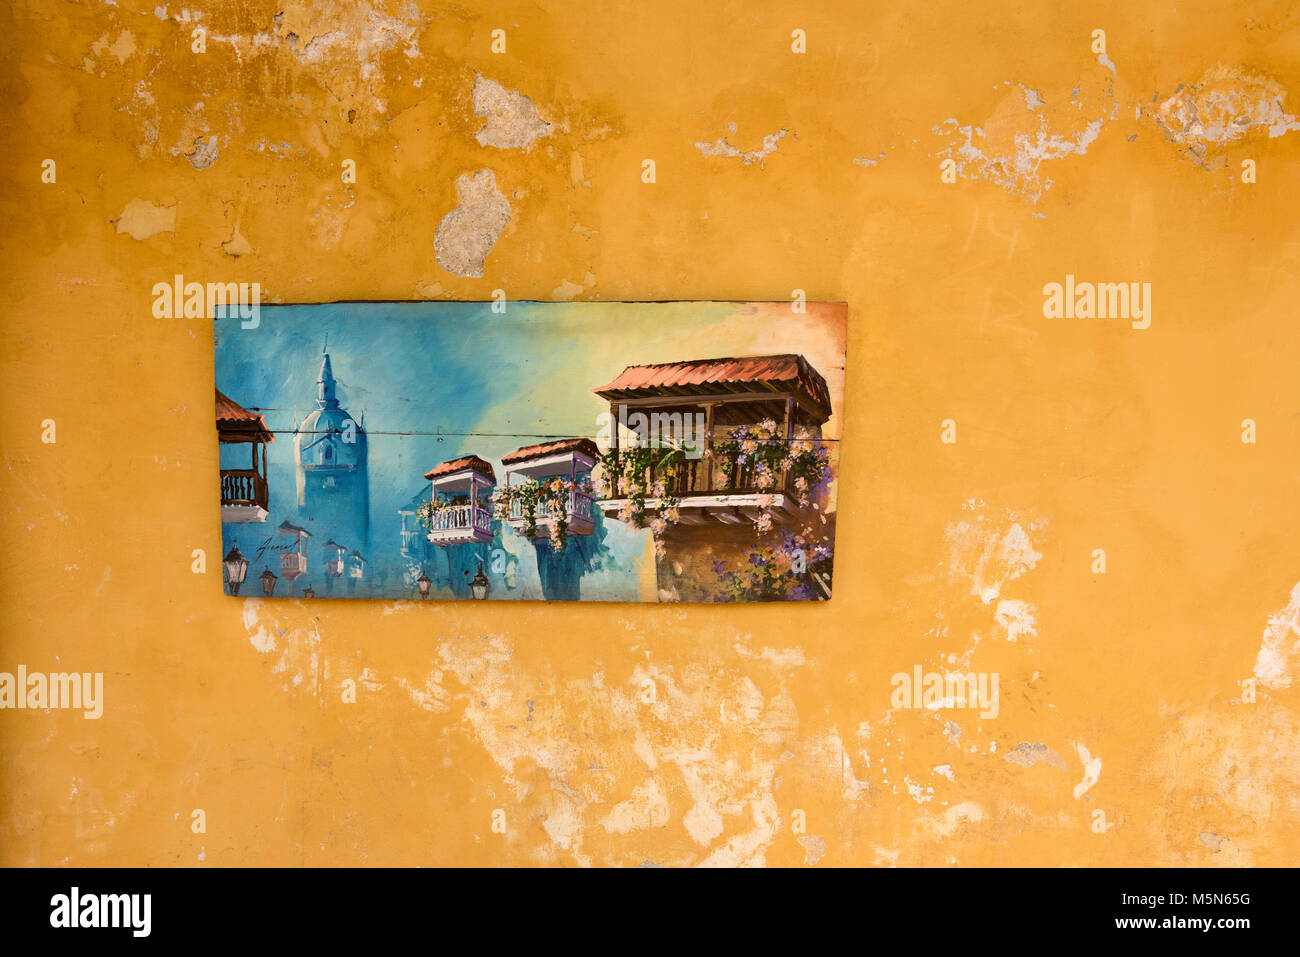 Una imagen de una escena callejera en Cartagena distressd Coombia colgado en una pared mirando con pintura desconchada Foto de stock